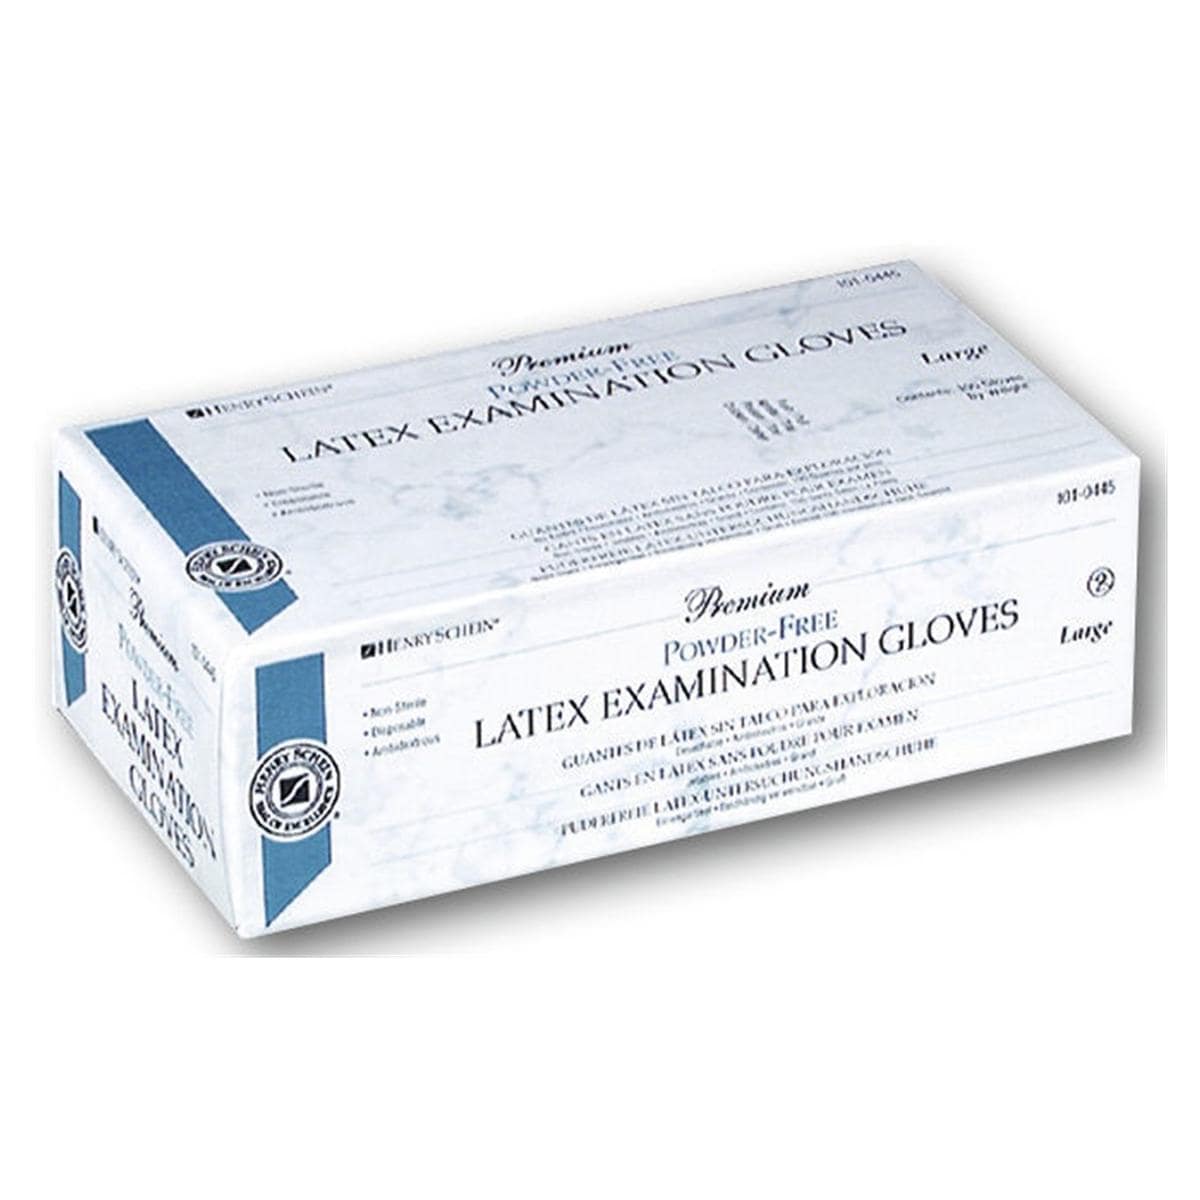 Premium Latex Examination Gloves - L - 100 pcs